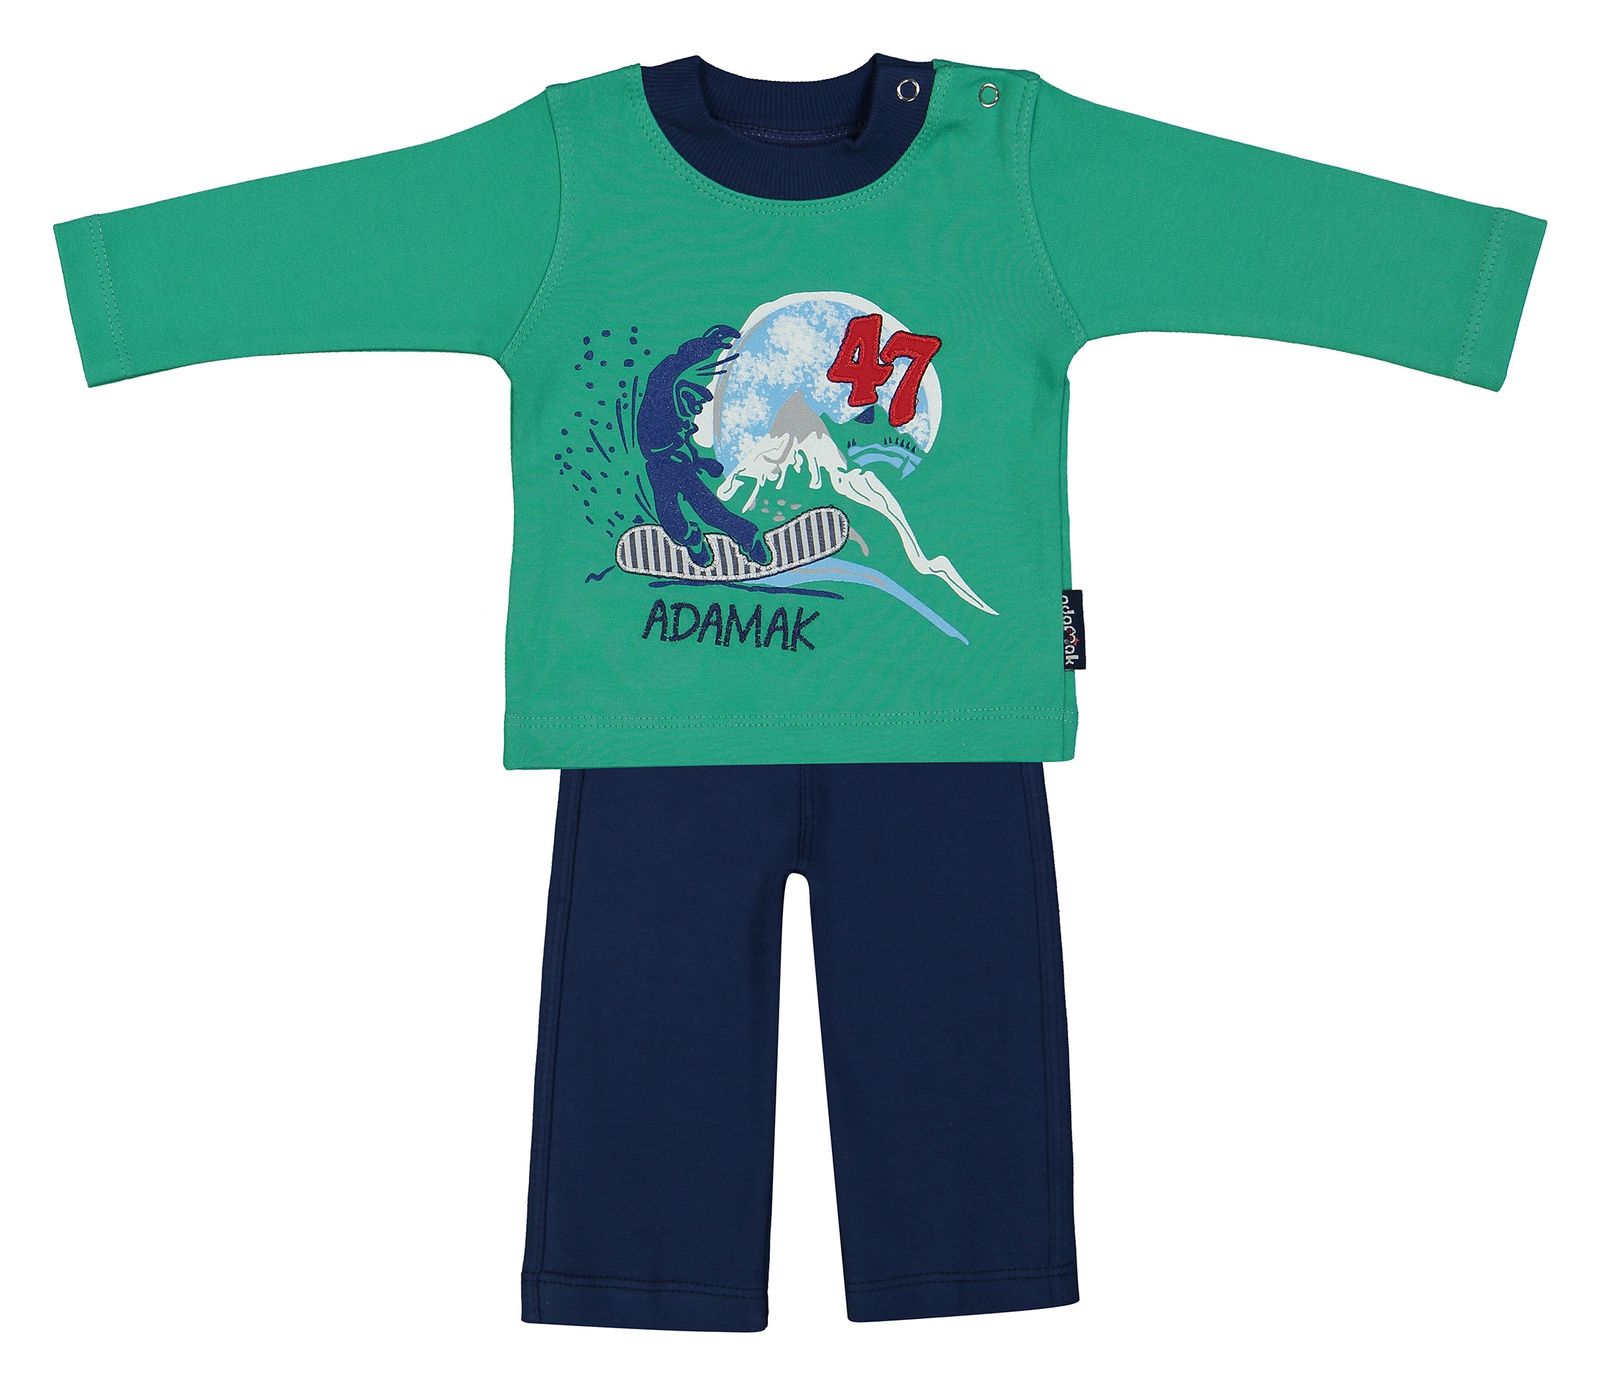 ست تی شرت و شلوار نوزادی پسرانه آدمک مدل 2171100-46 - سبز - 1